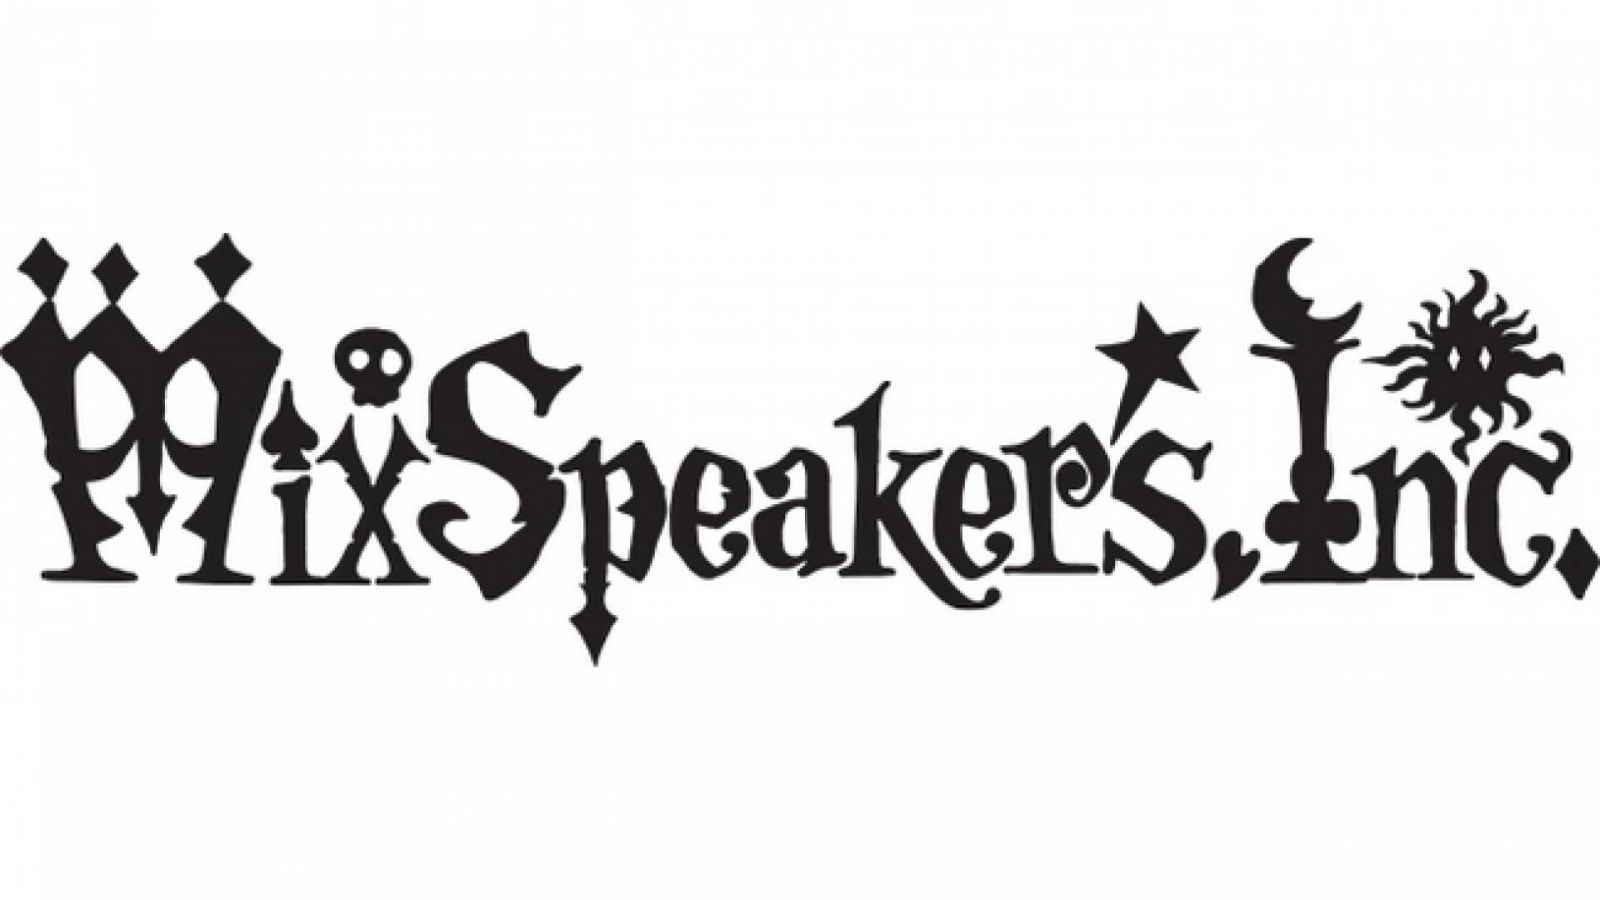 Bientôt un nouveau membre chez Mix Speaker's, Inc. © Mix Speaker's, Inc.